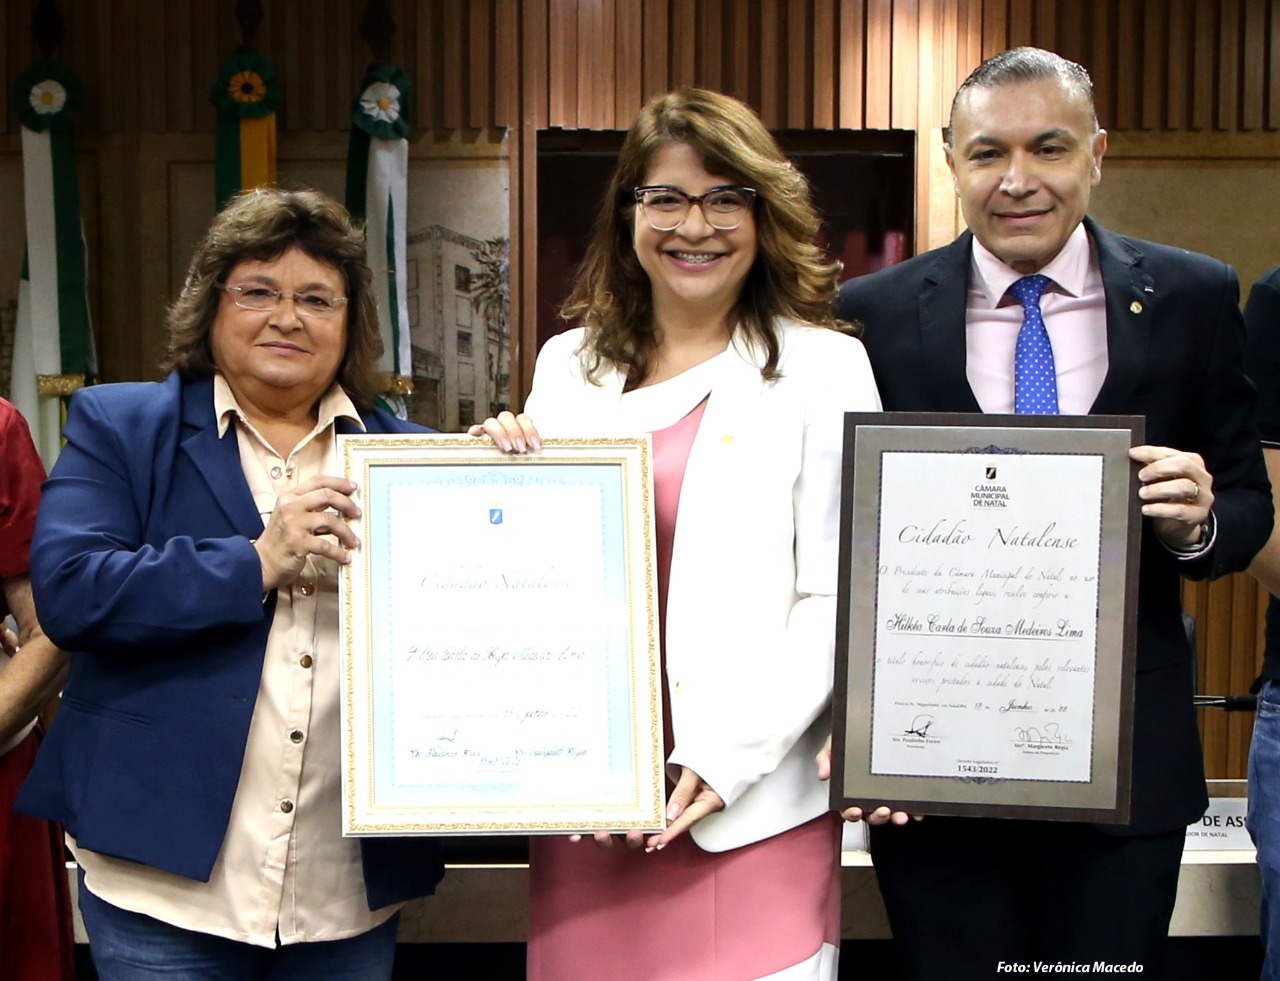 Câmara entrega Título de Cidadã Natalense à deputada federal Carla Dickson